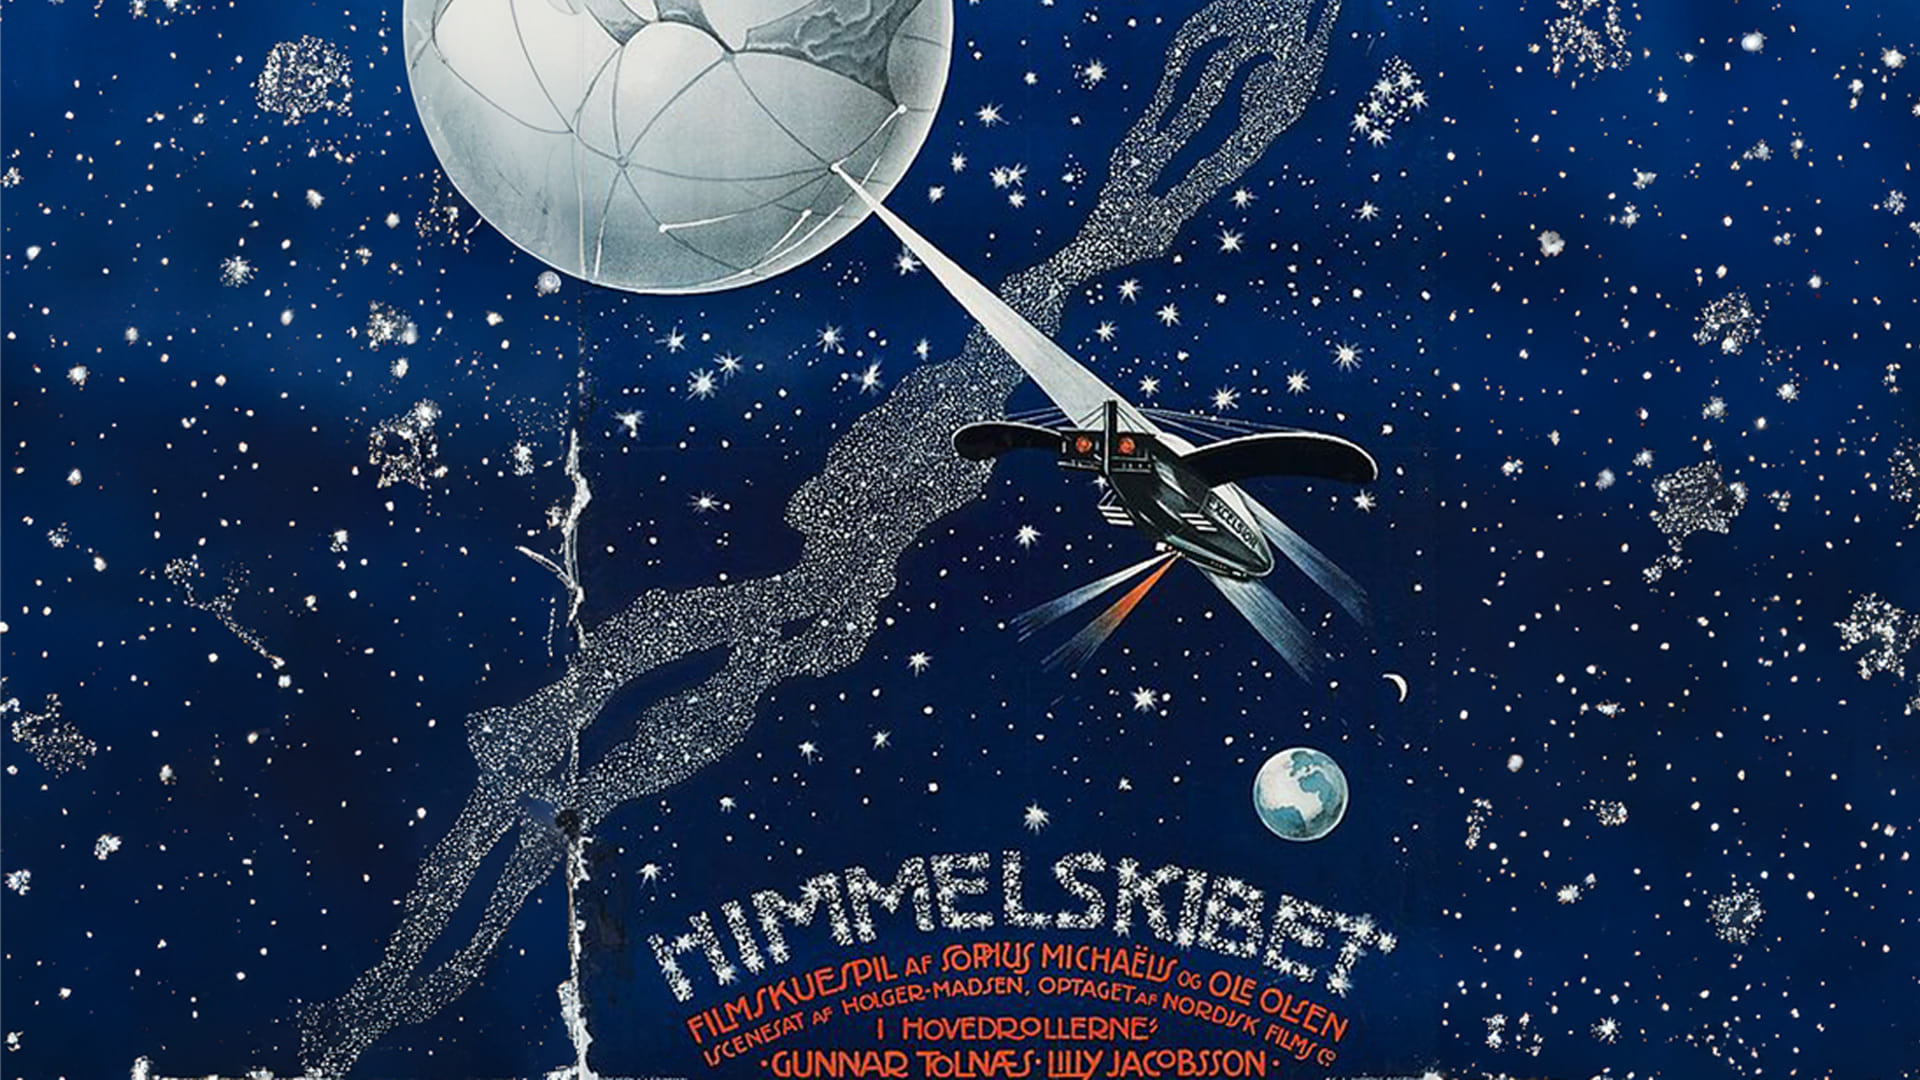 Himmelskibet (1918)